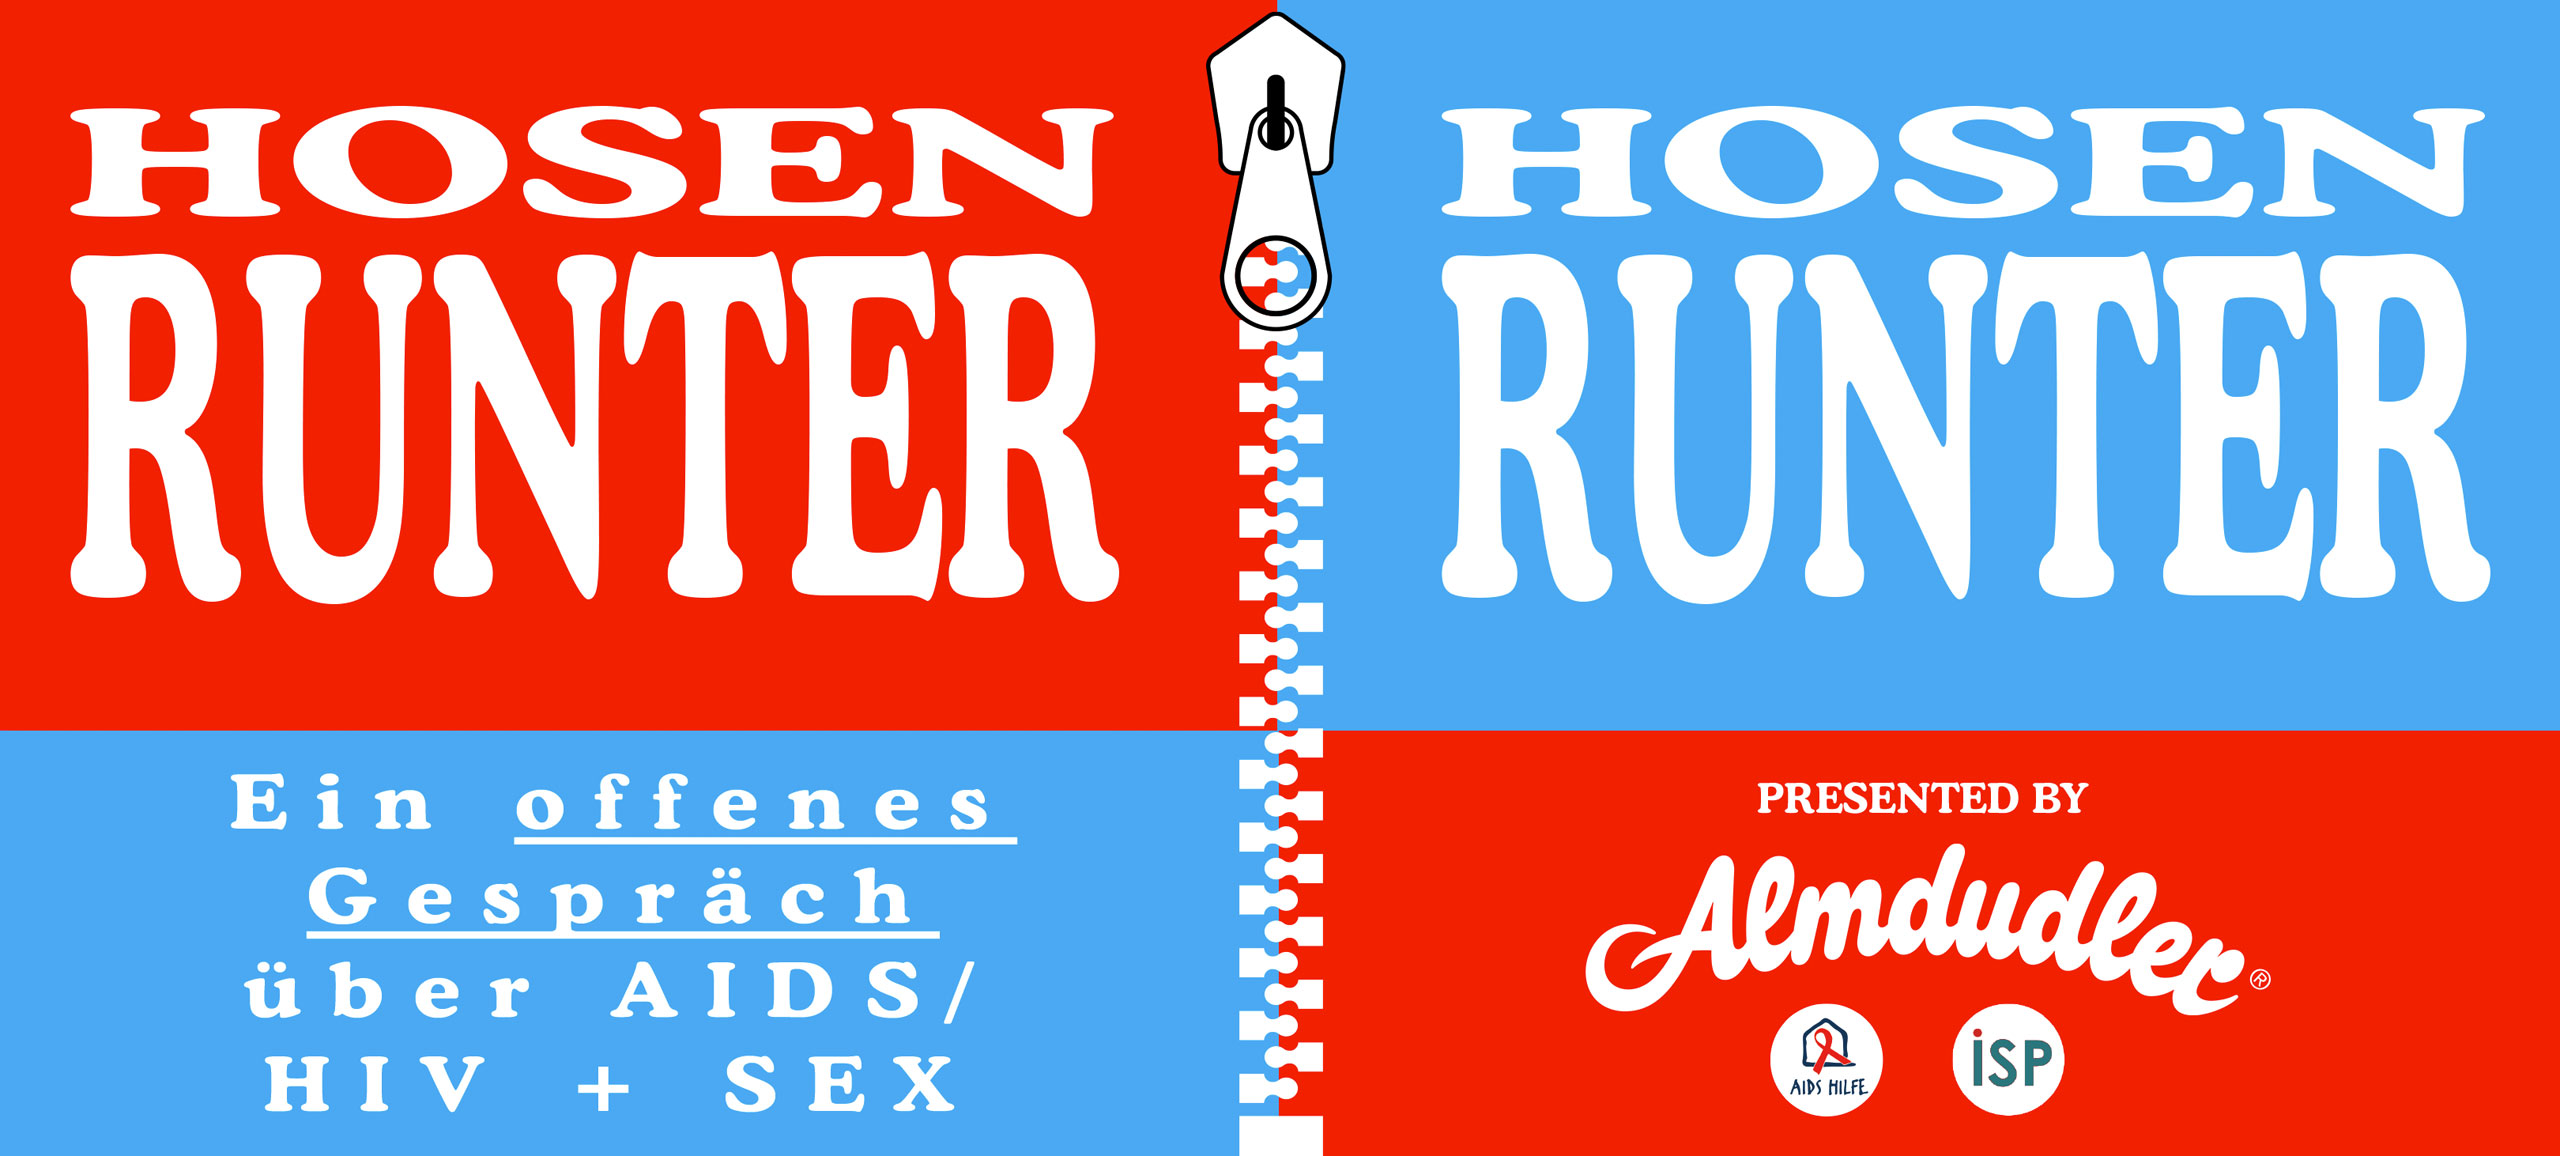 HOSENRUNTER - Ein offenes Gespräch über AIDS/HIV+SEX - Presented by Almdudler®